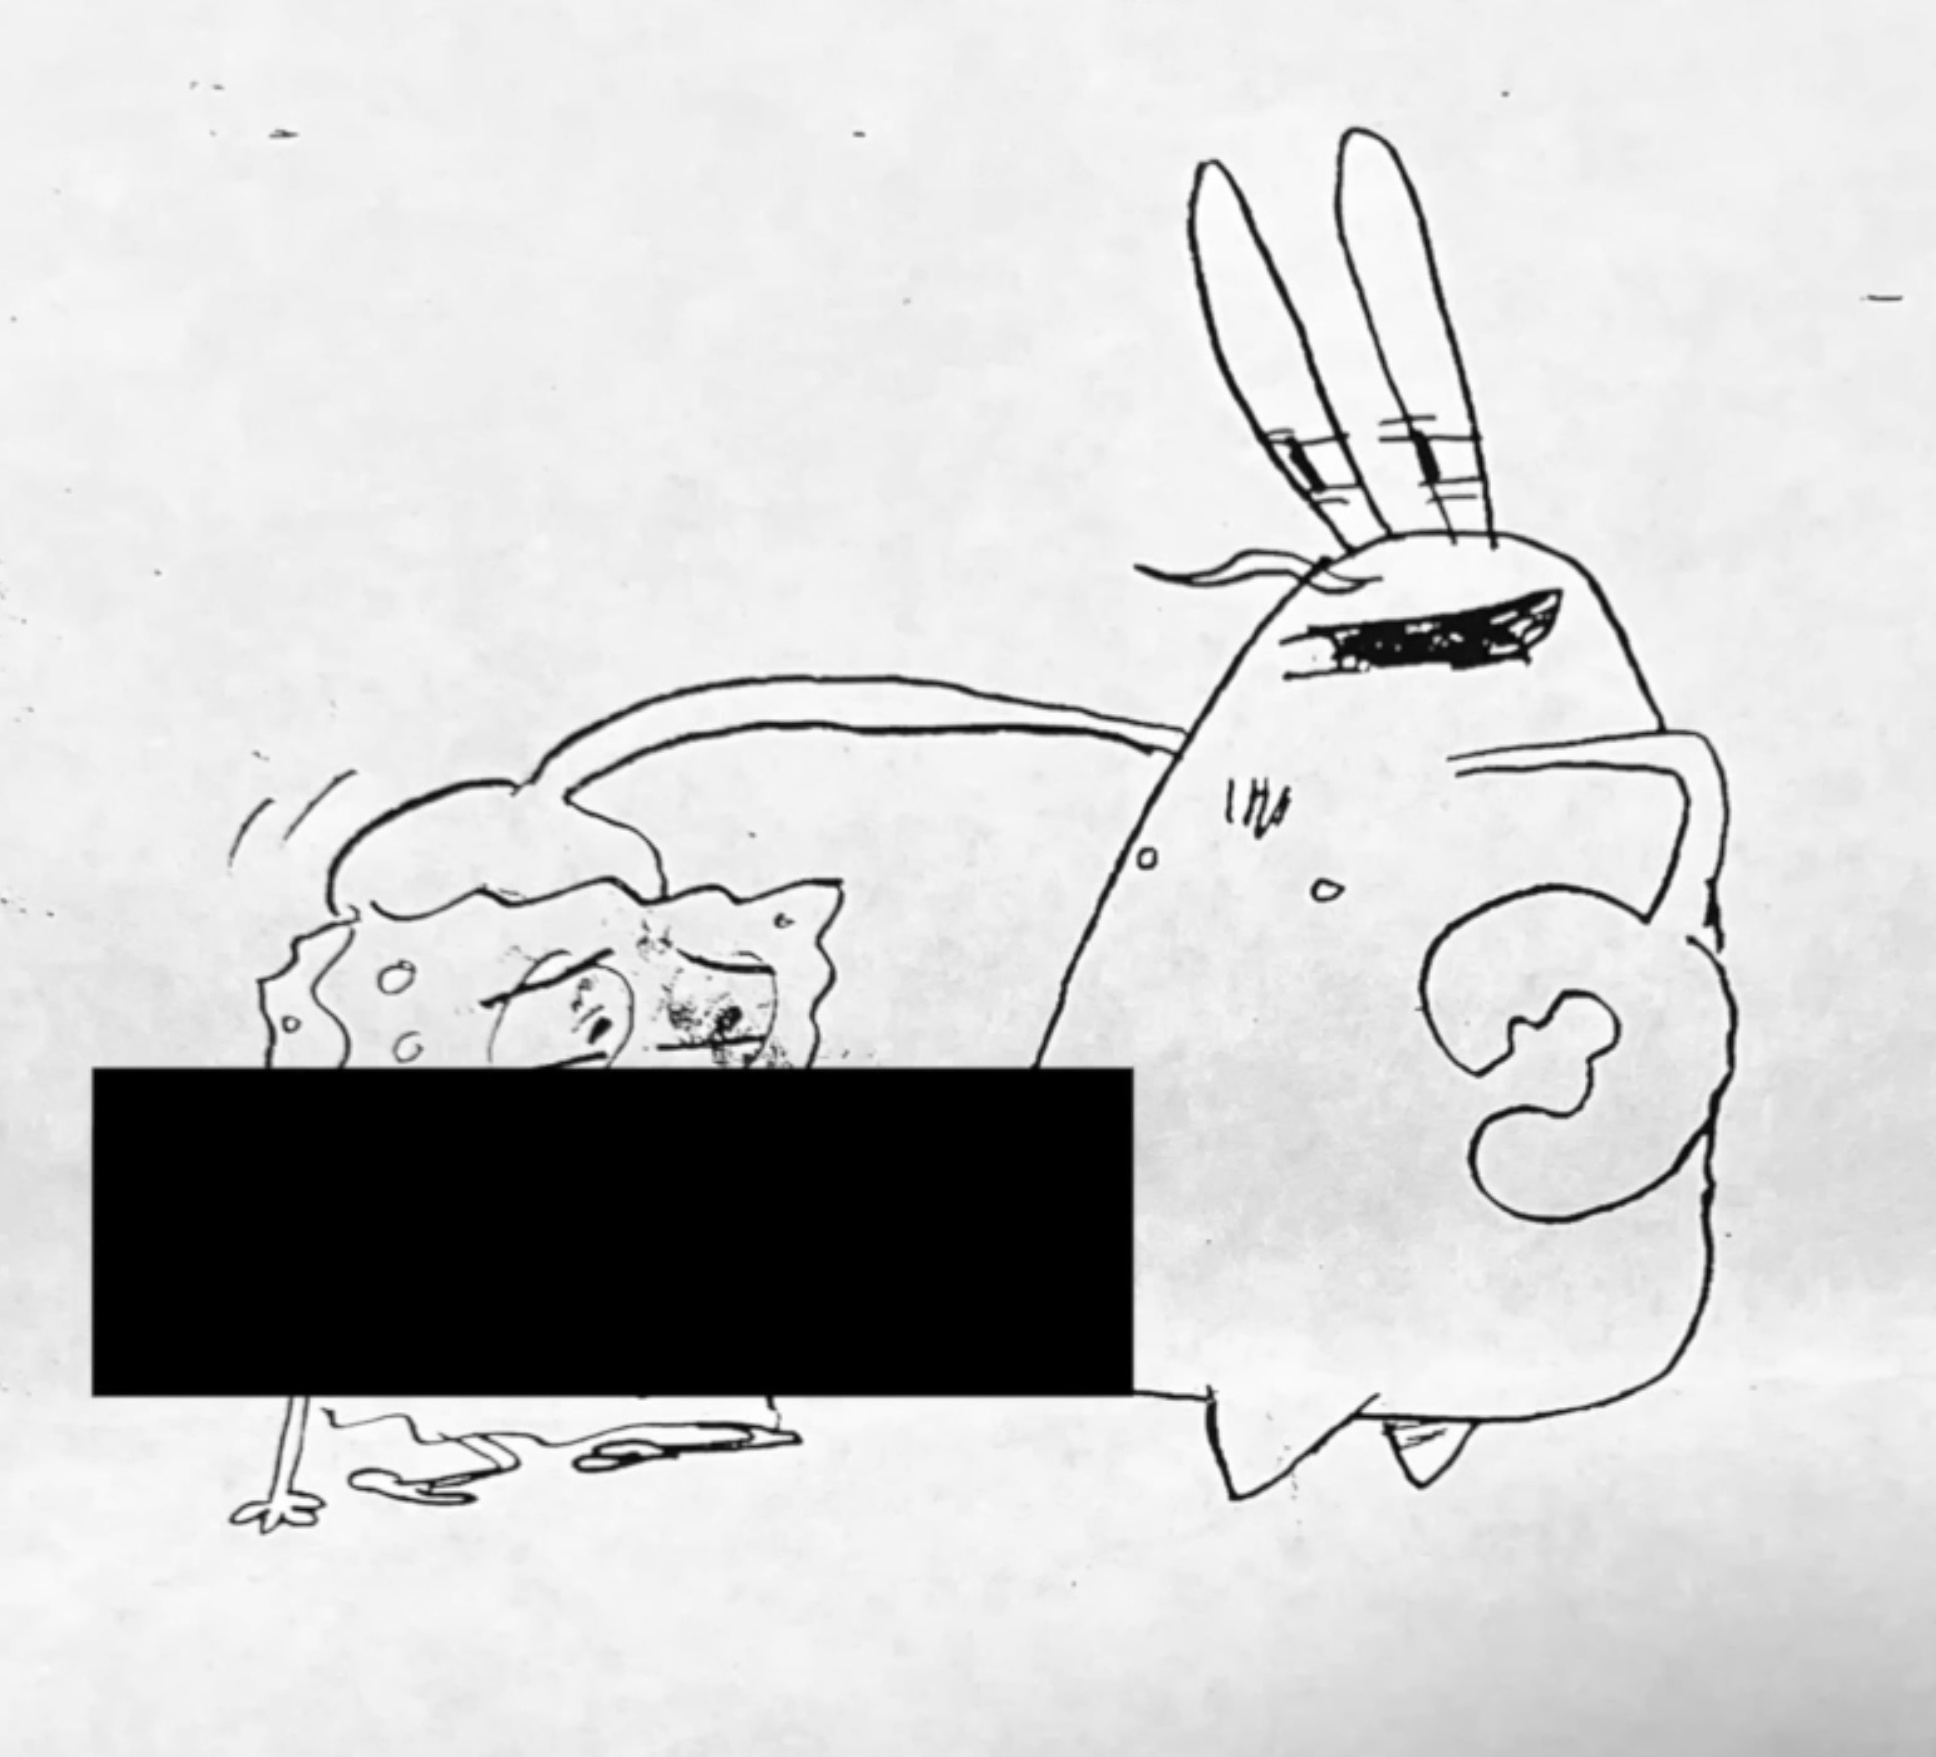 Губка без трусов: раскрыты секретные кадры мультсериала «Спанч Боб» для взрослых (18+)